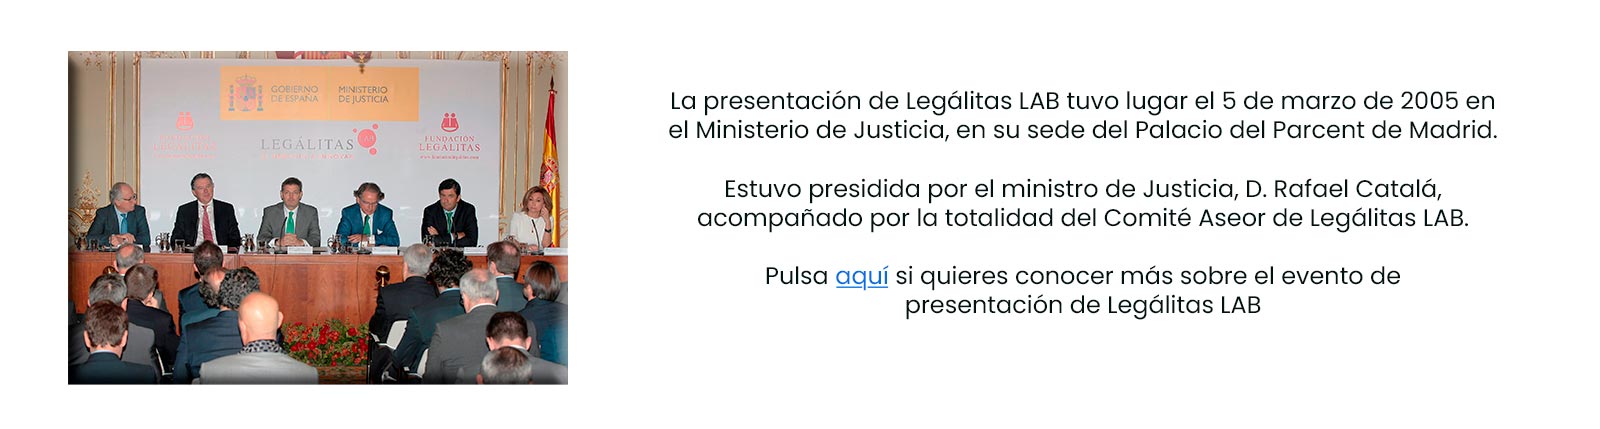 El Ministro de Justicia Rafael Catalá preside presentación de LegalitasLAB